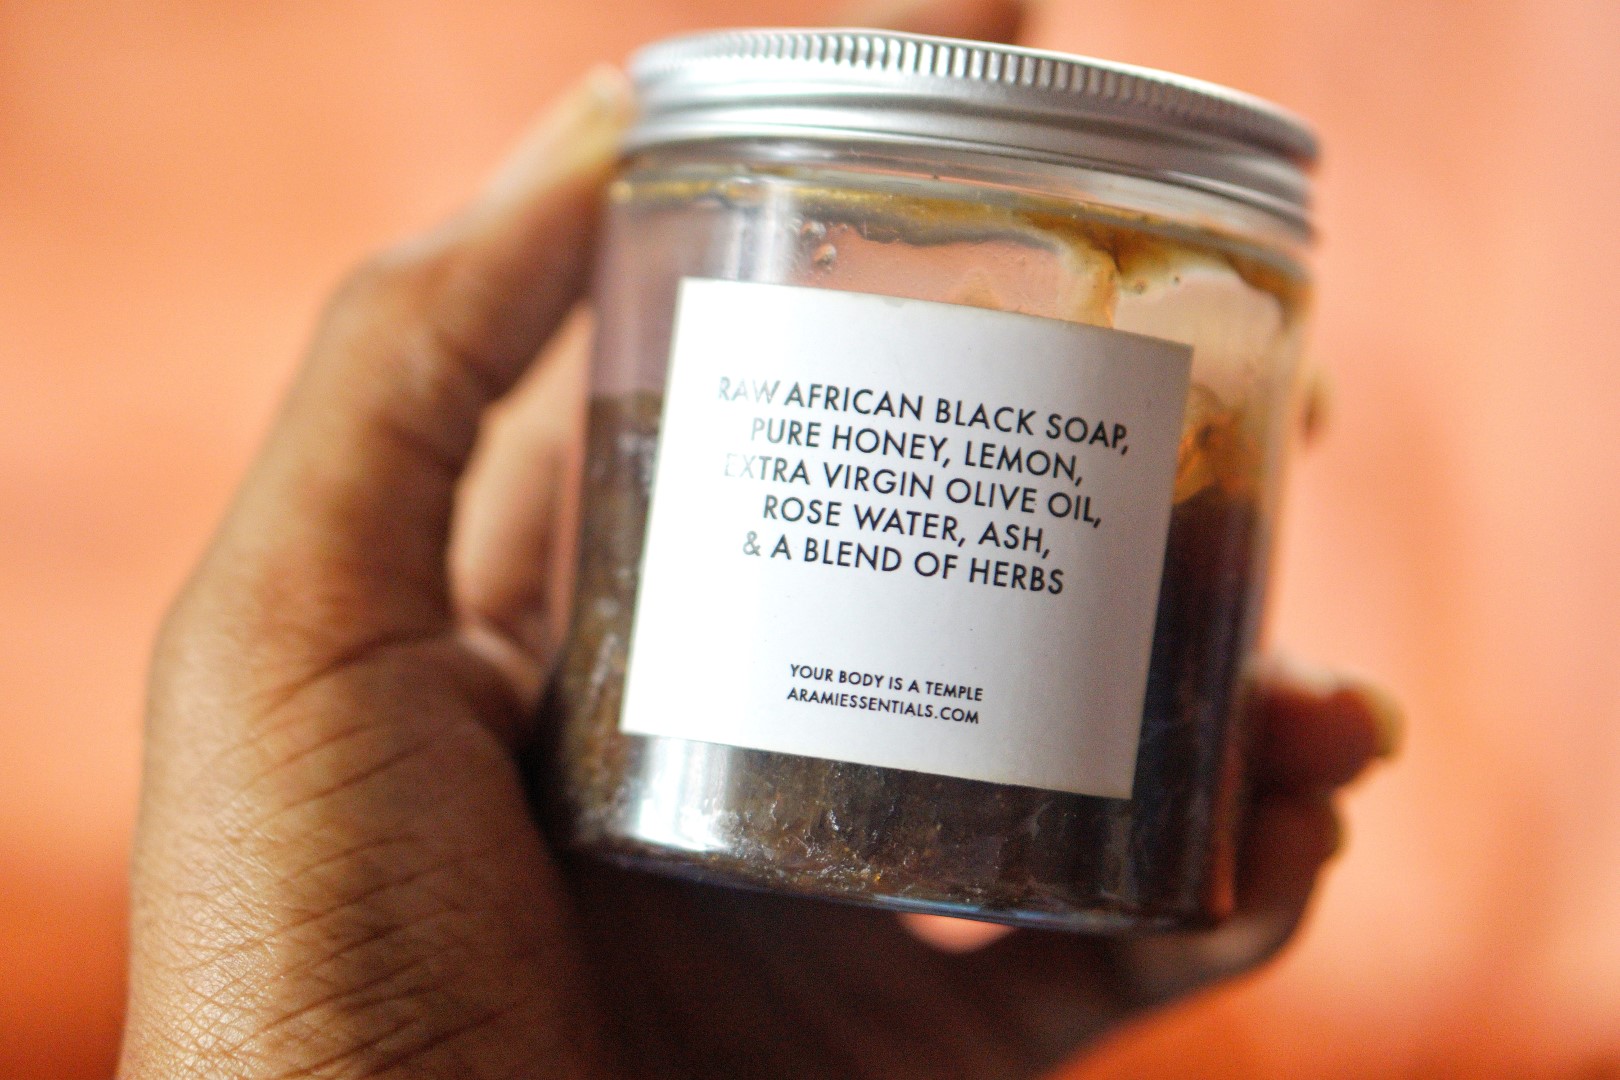 arami essentials black soap ingredients